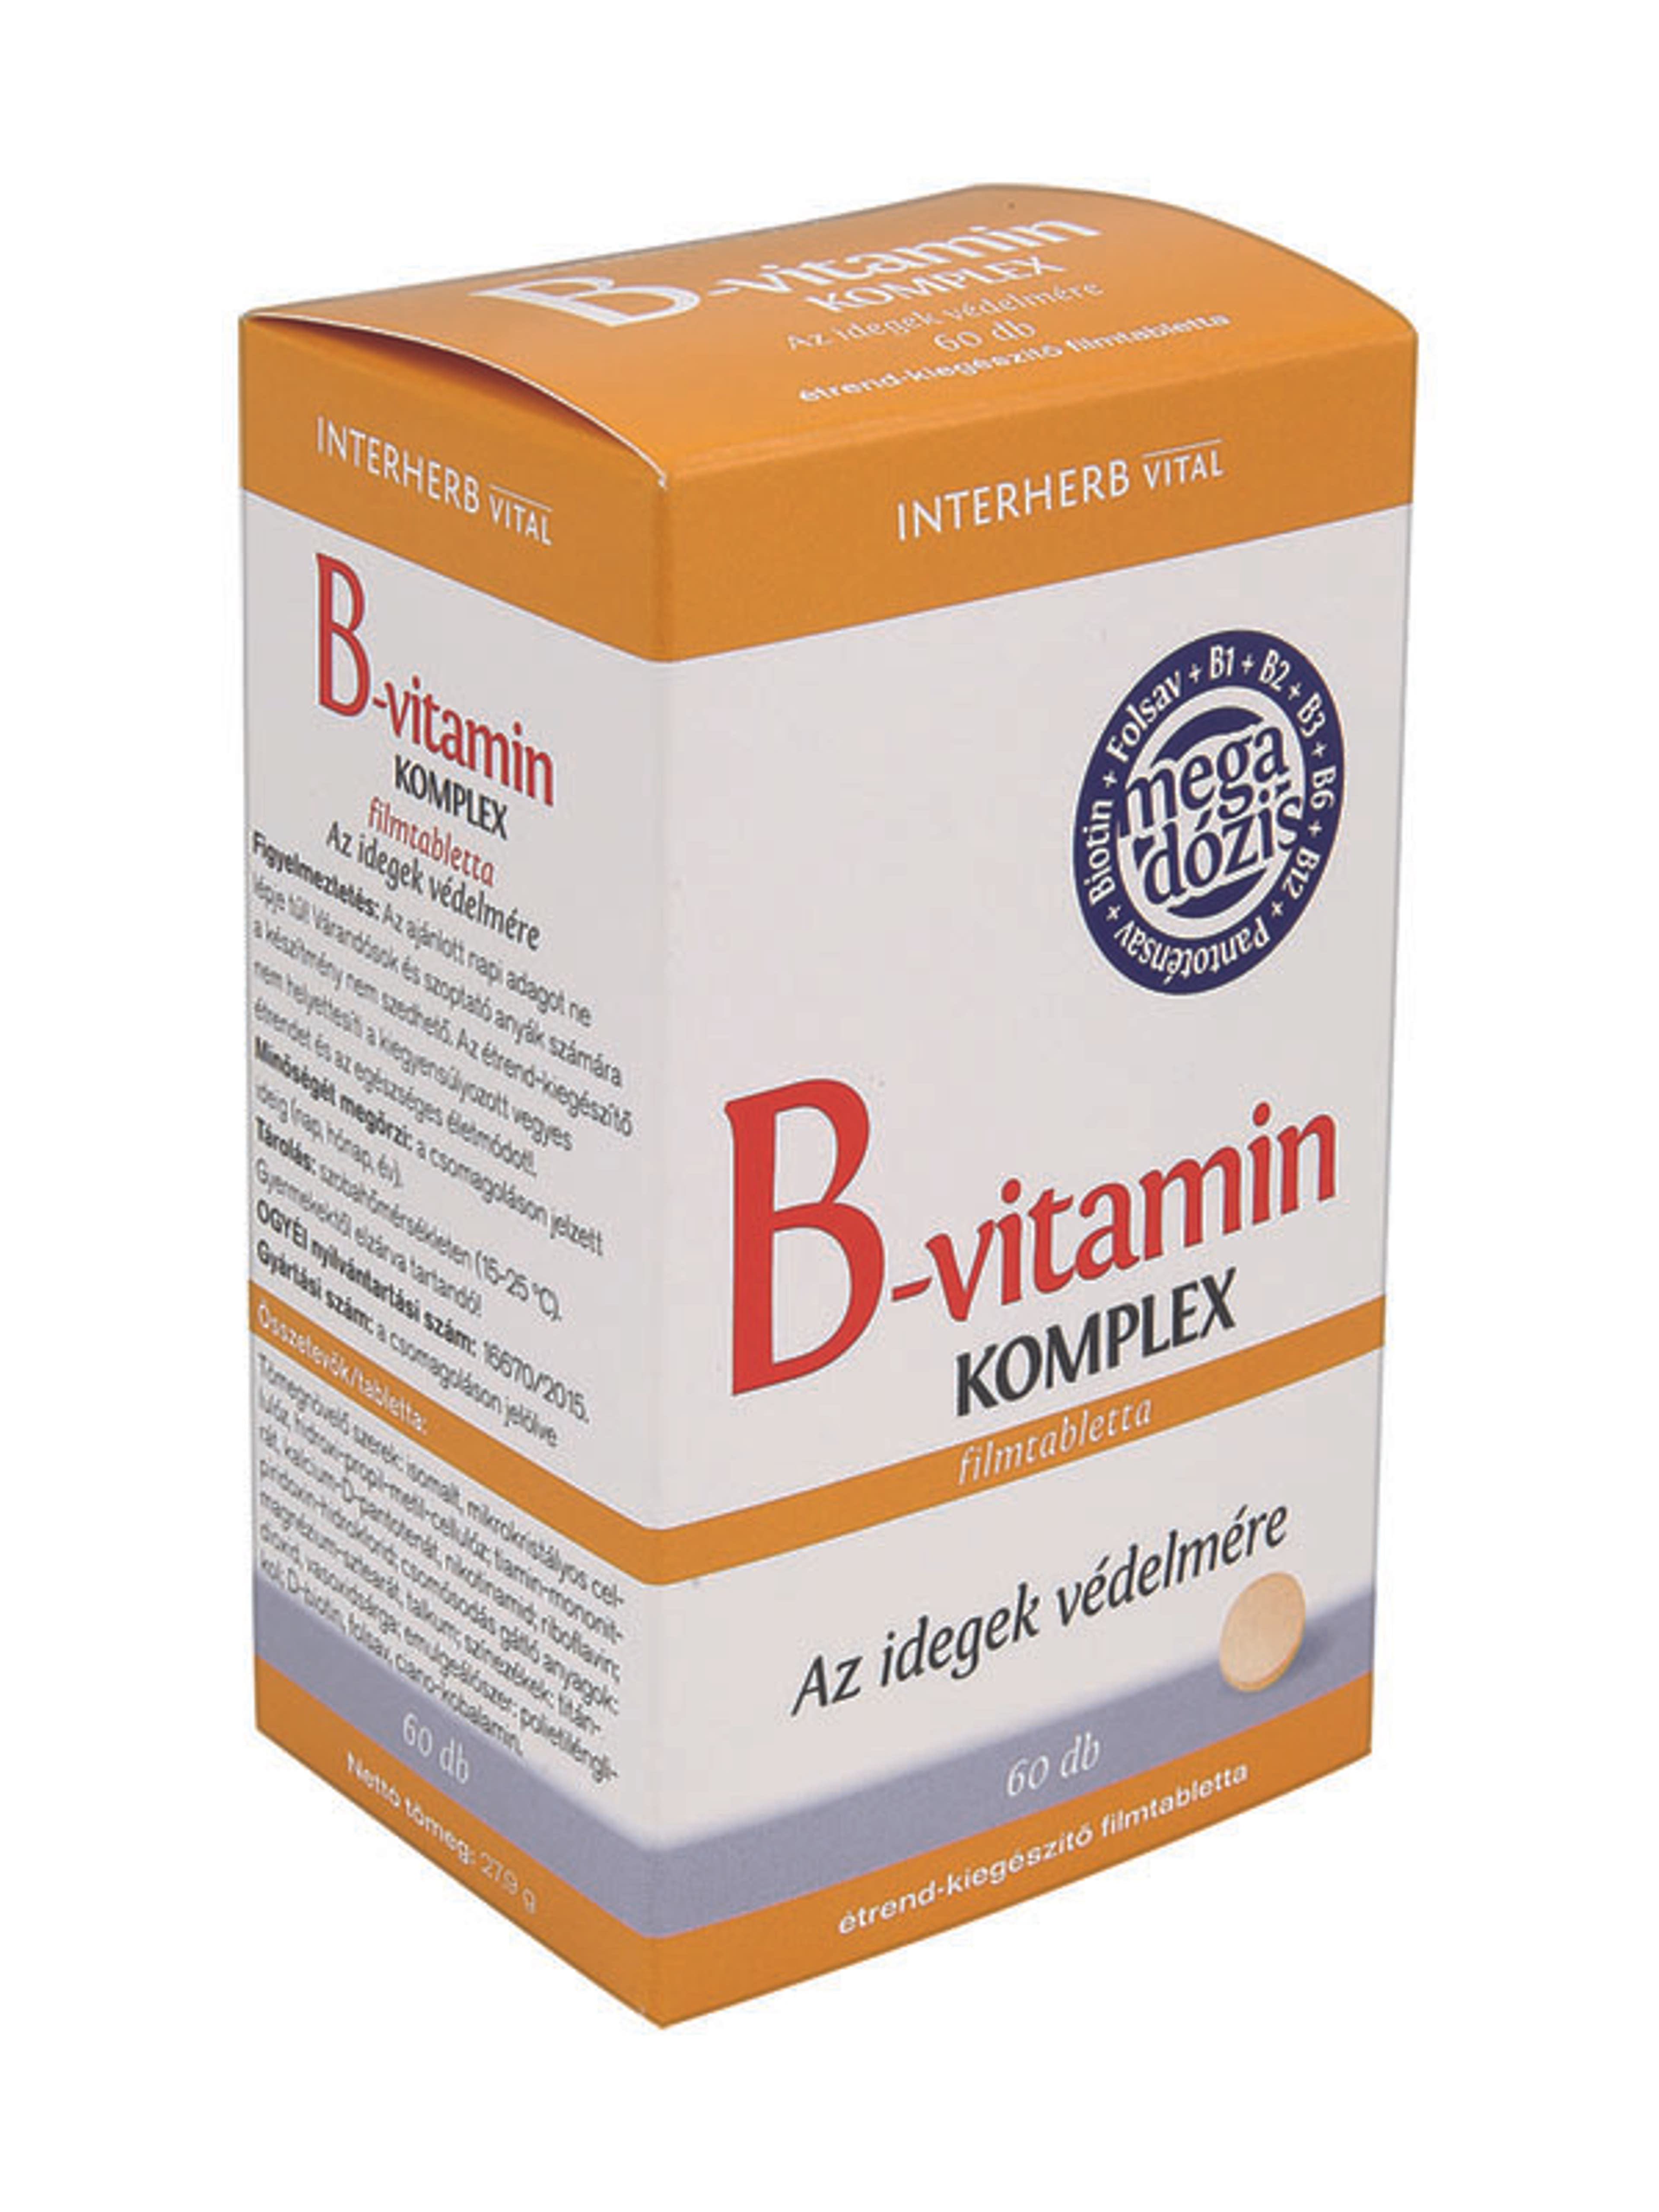 Interherb B-Vitamin Komplex Mega Dózis Tabletta - 60 db-1